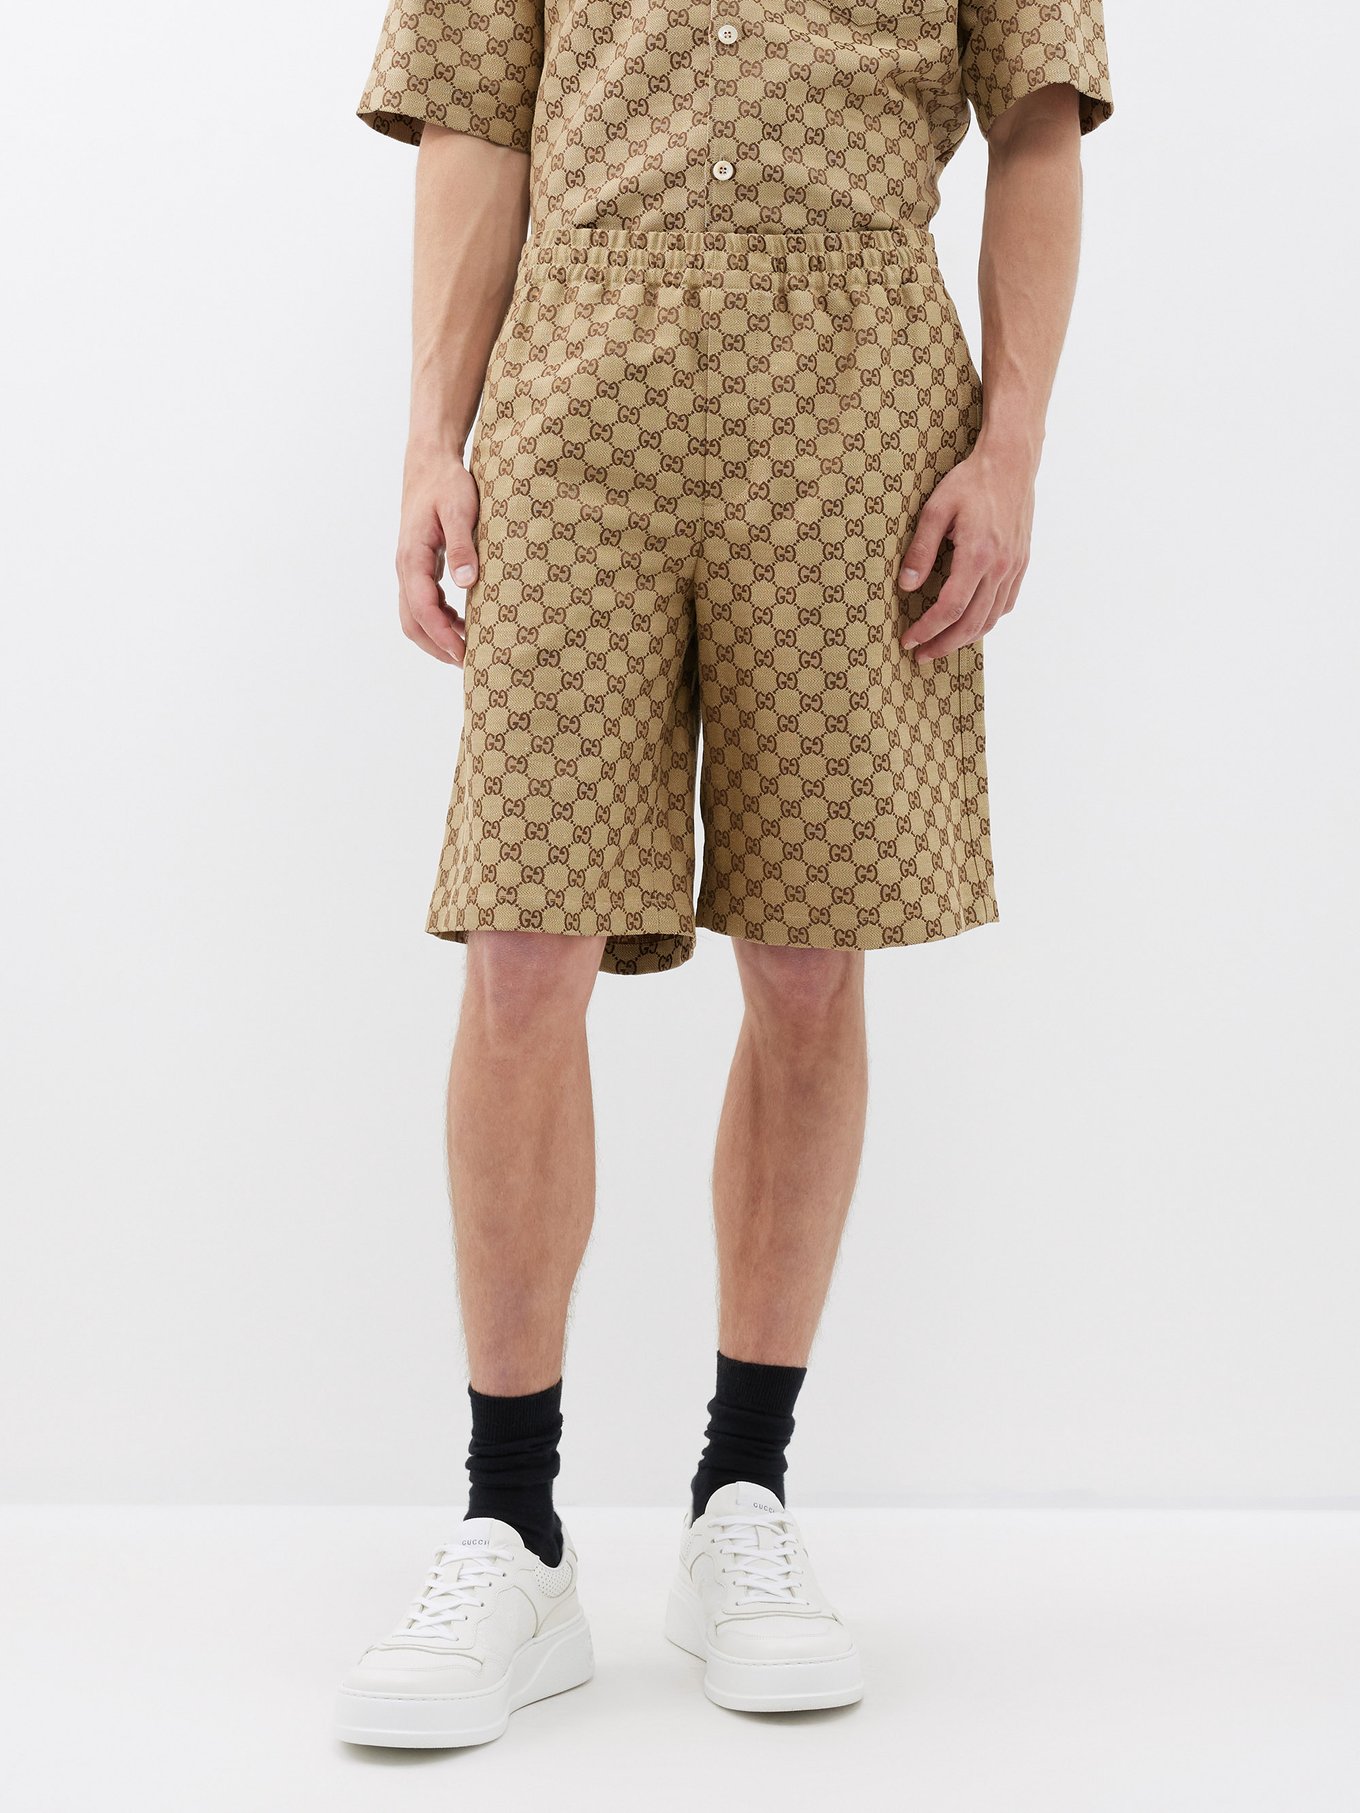 Gucci - Short-sleeved GG-jacquard Linen-Blend Shirt - Mens - Camel